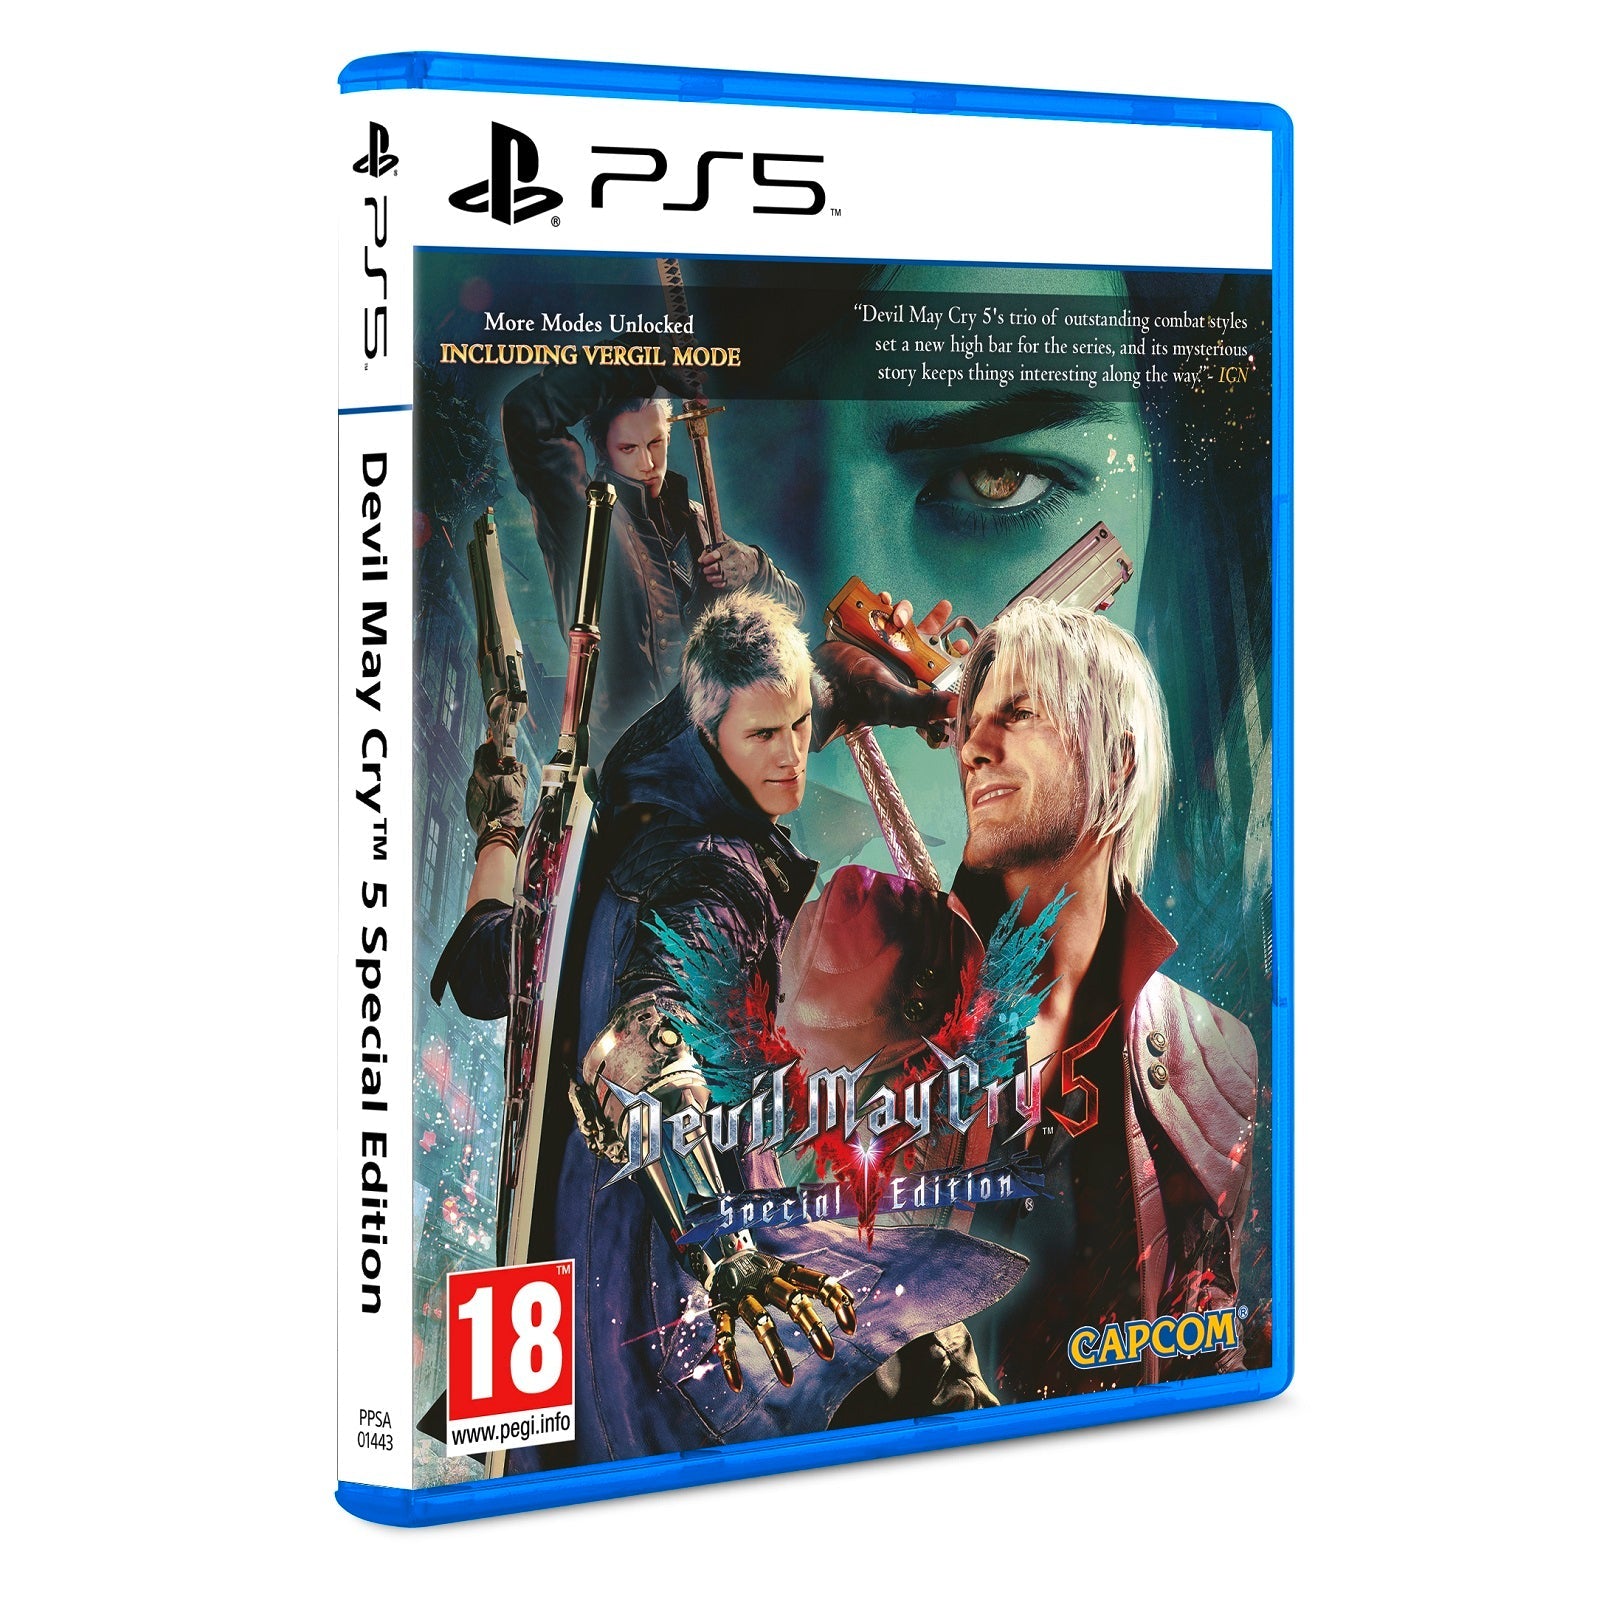 משחק Devil May Cry 5 Special Edition PS5 PPSA-01443